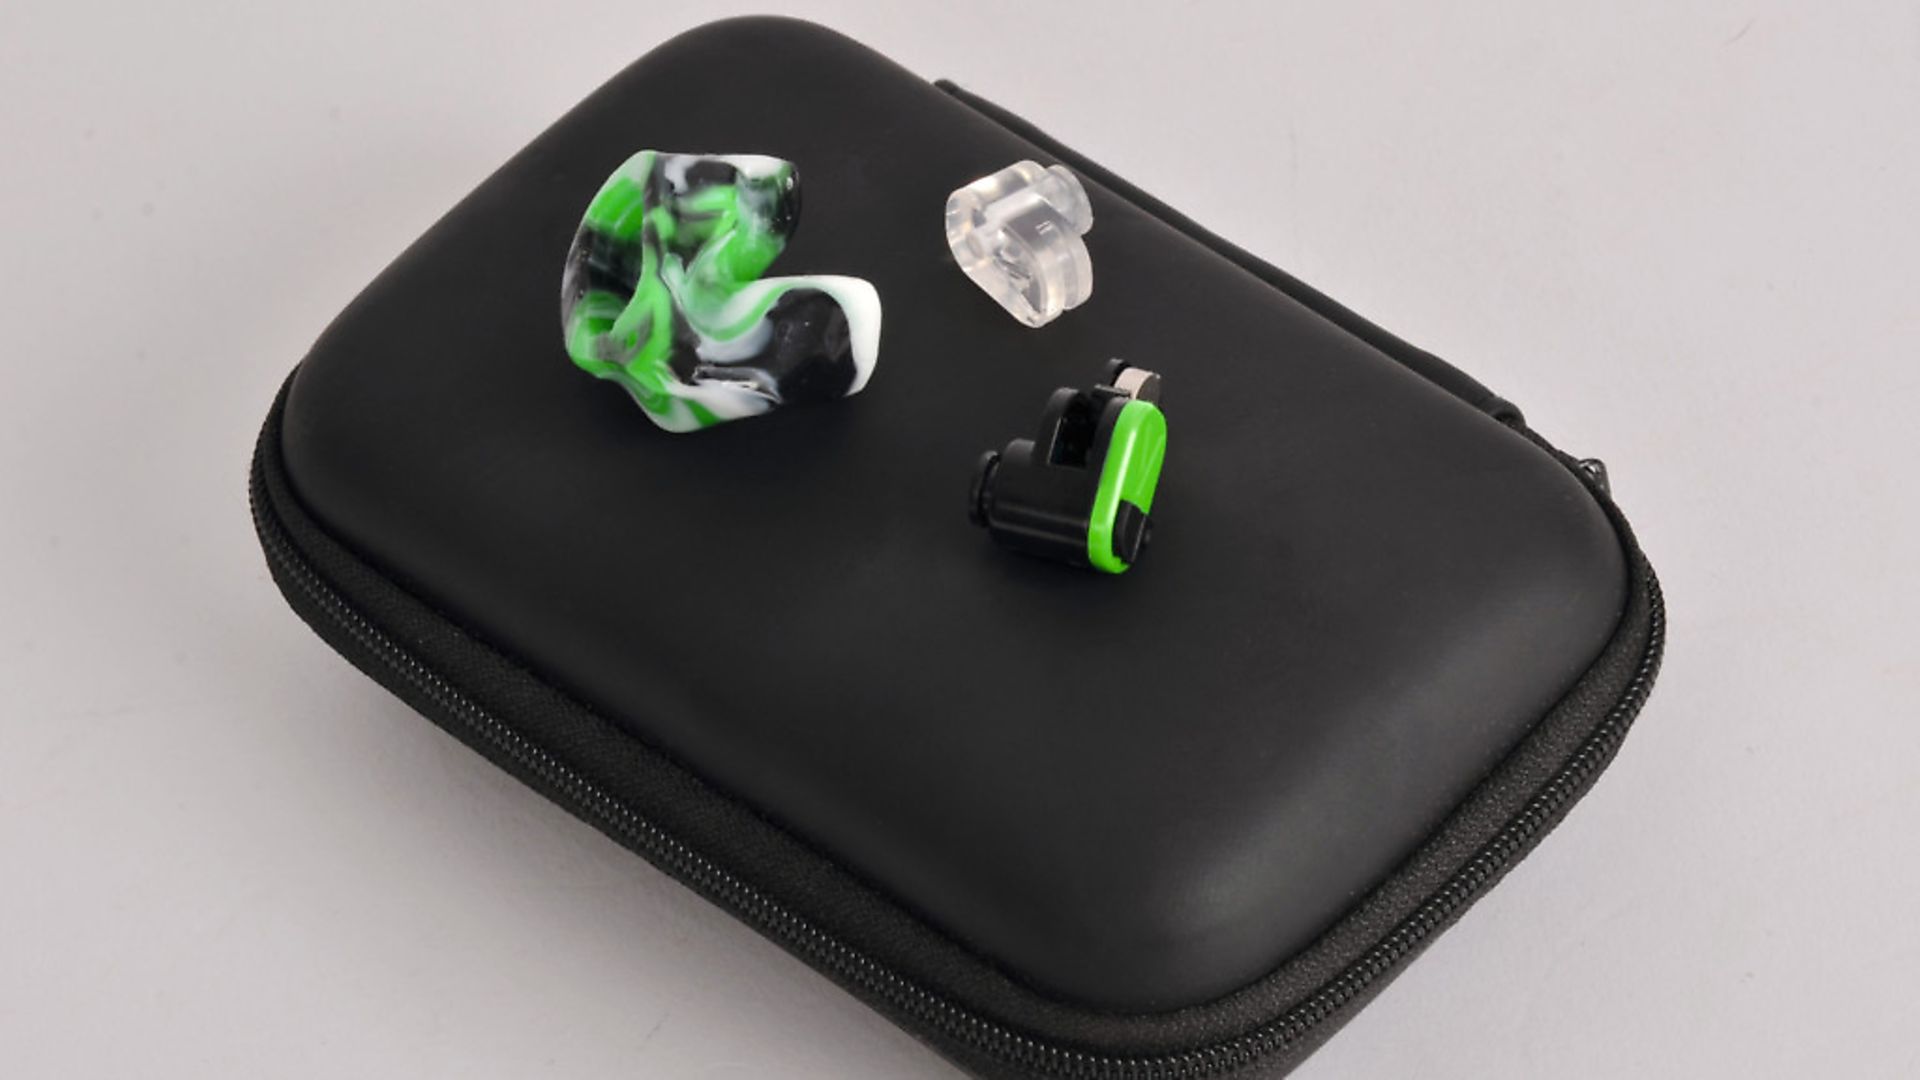 Vario custom-made ear plugs - tried & tested